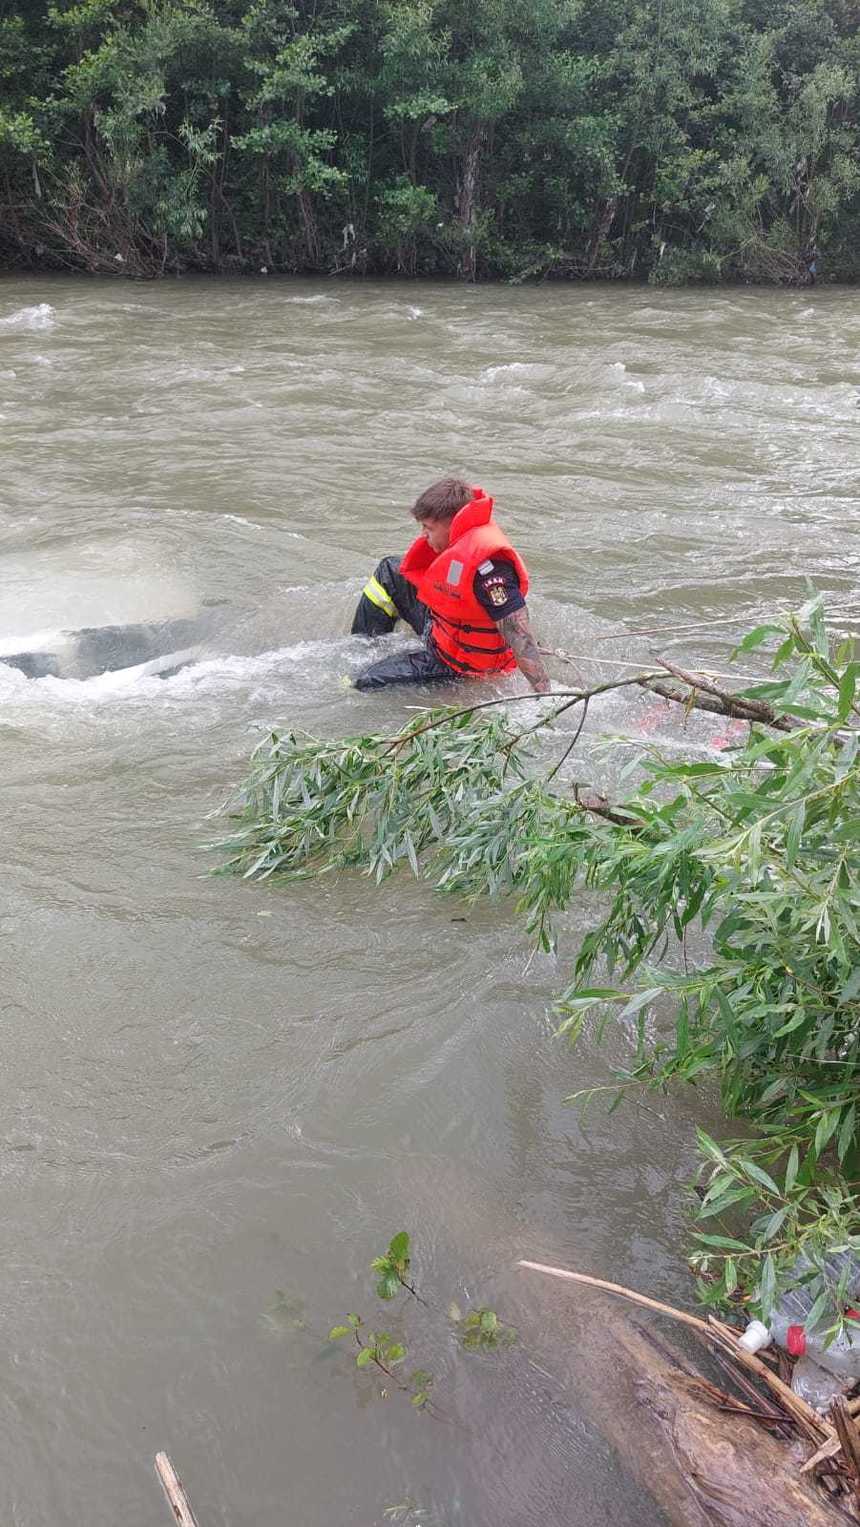 UPDATE - Cluj: Maşină căzută în apele râului Arieş/ Autoturismul a fost tras la mal, înăuntru nefiind găsite persoane/ Căutările continuă pentru a se stabili dacă există victime - FOTO, VIDEO